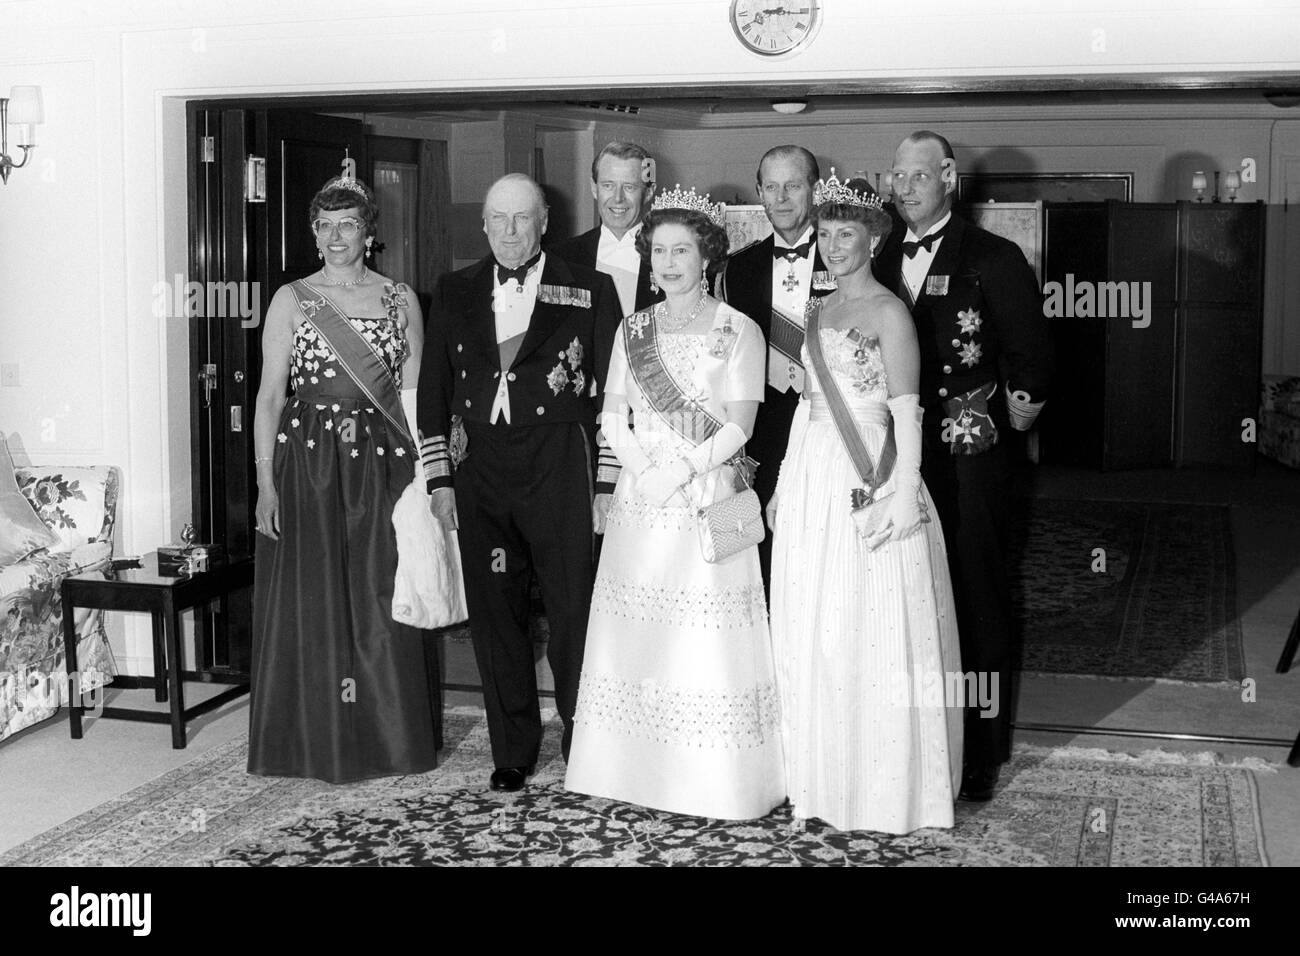 Königin Elizabeth II. Und der Herzog von Edinburgh mit der norwegischen Königsfamilie, bevor sie zum Abendessen einlud, als sie an Bord der Royal Yacht Britannia in Oslo ein Staatsbankett veranstaltete. Die königlichen Gruppen sind, von links nach rechts, Prinzessin Est, König Olaf, Johan Martin Ferner (Ehemann von Prinzessin Est), die Königin, der Herzog von Edinburgh, Kronprinzessin Sonja und Kronprinz Harald. Stockfoto